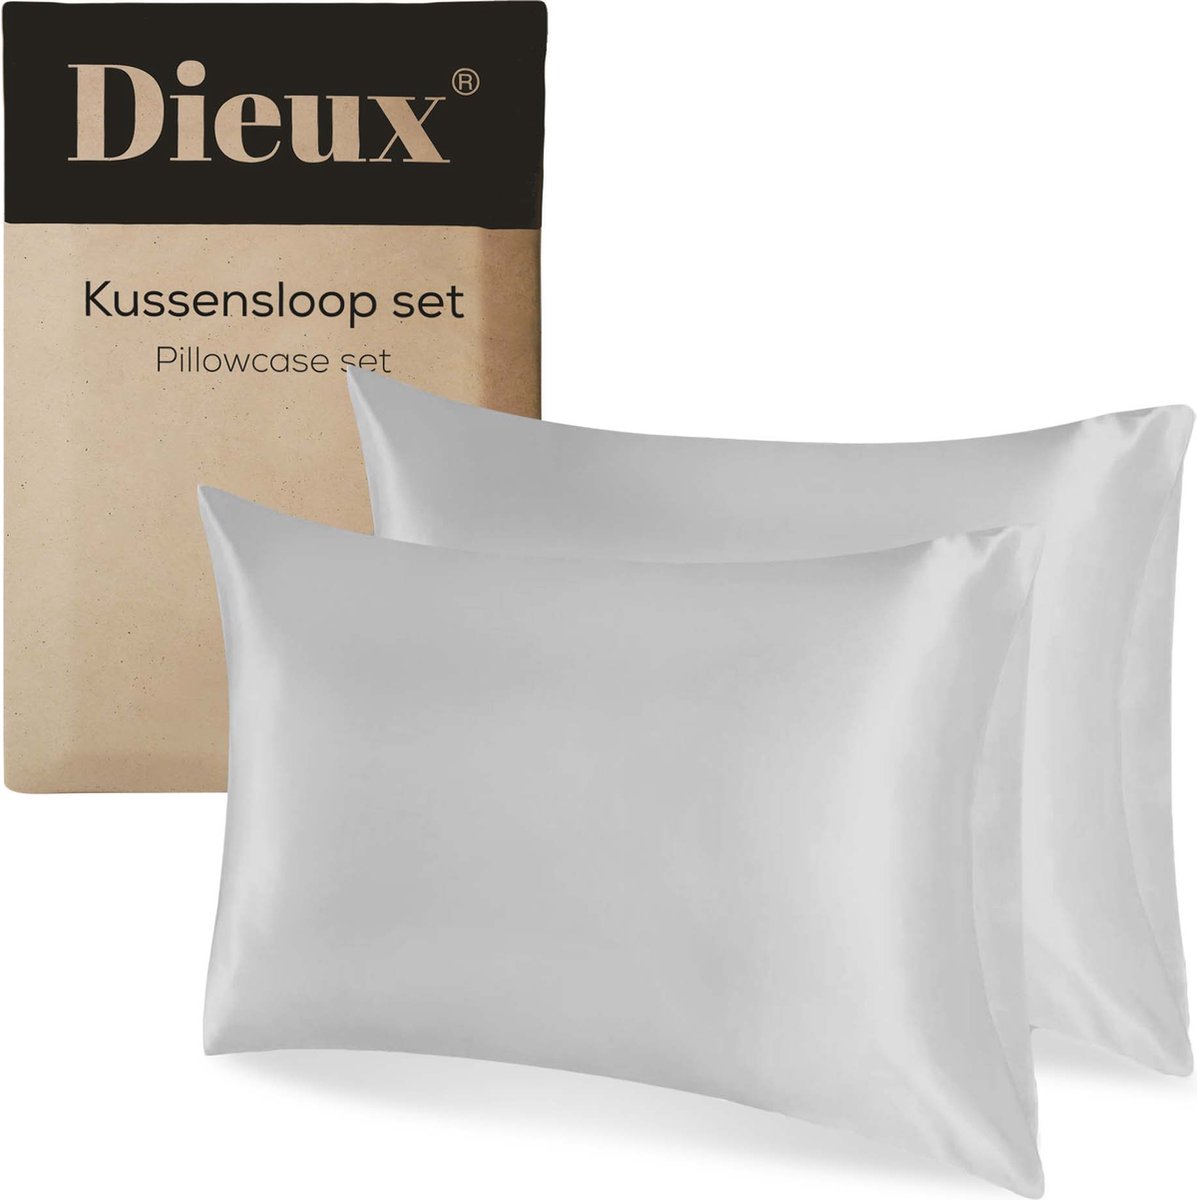 Dieux® - Luxe Satijnen Kussensloop - Grijs - Kussenslopen 60 x 70 cm - set van 2 - Kussensloop Satijn - Anti allergeen - Huidverzorging - Haarverzorging